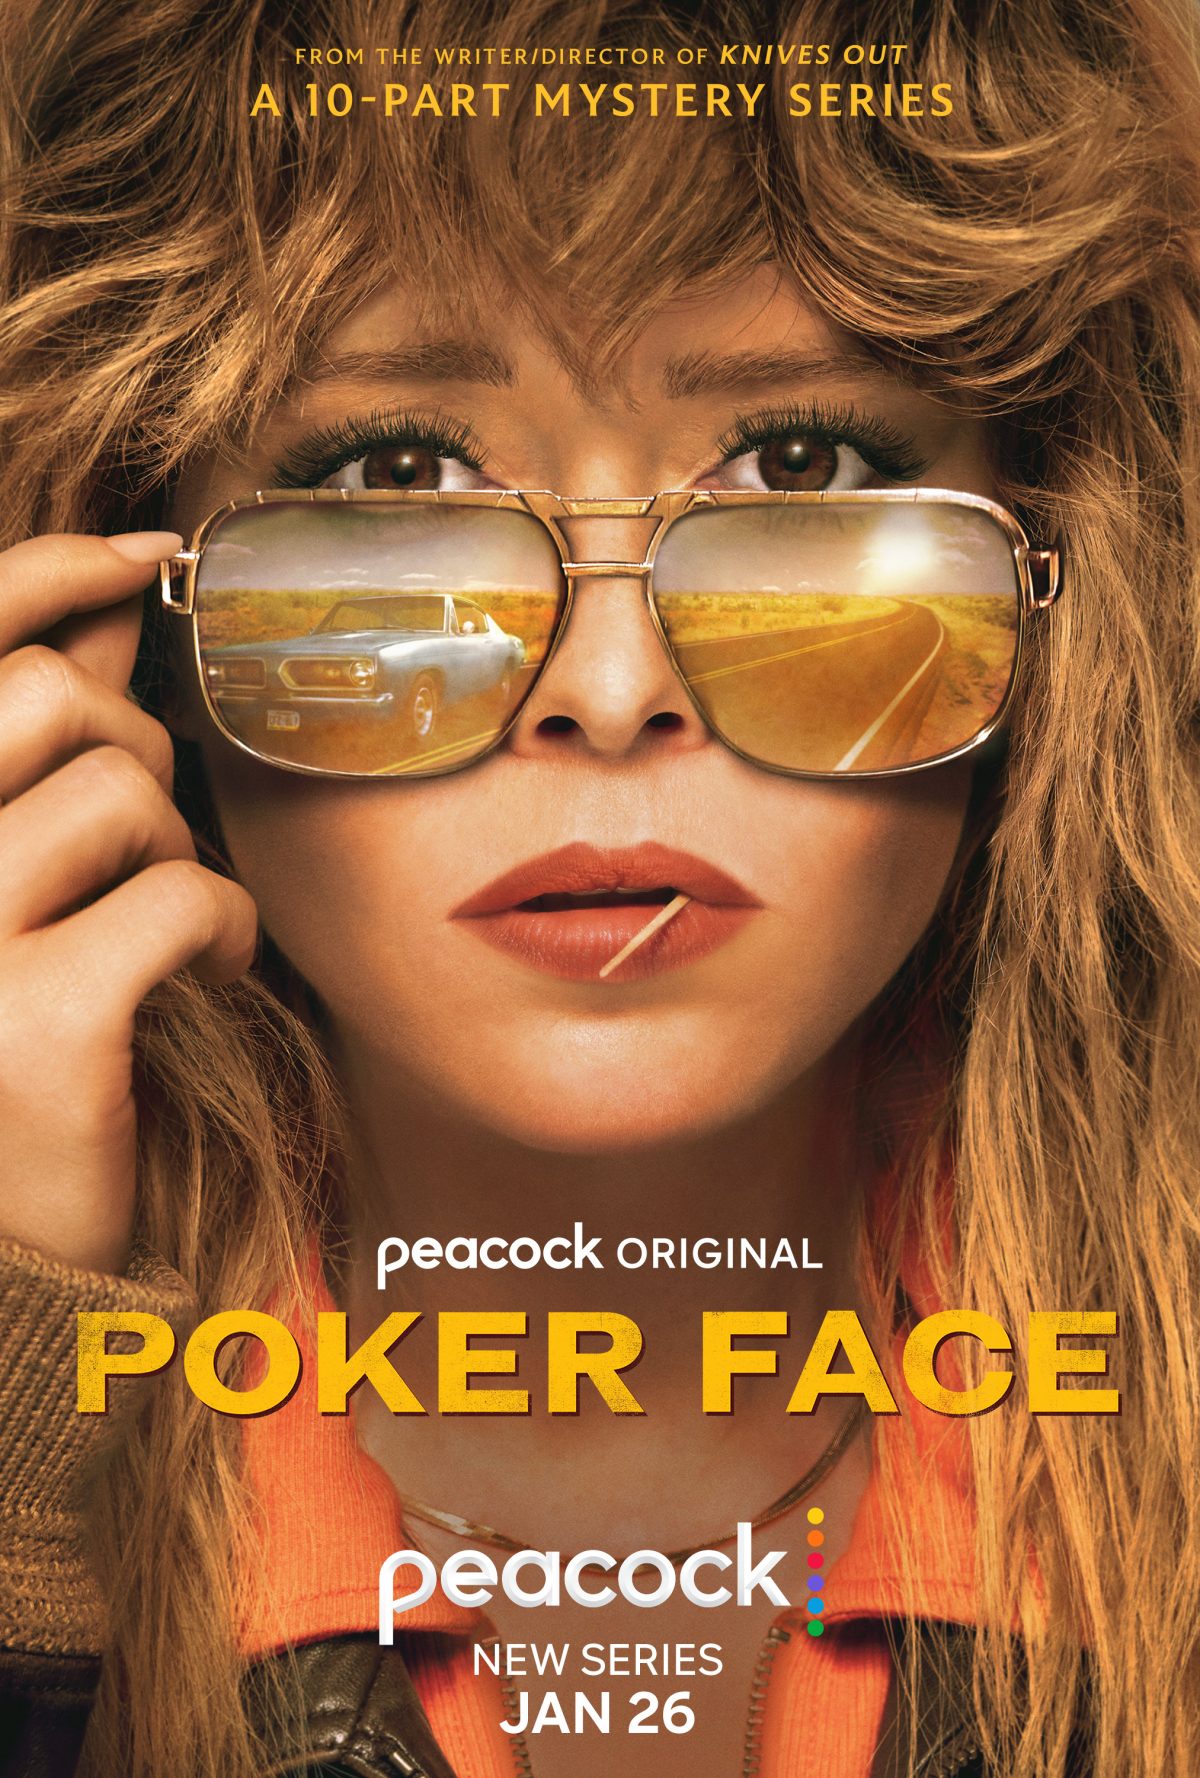 Aperçu de la bande-annonce et de l’affiche de Poker Face Les capacités de résolution de crimes de Natasha Lyonne